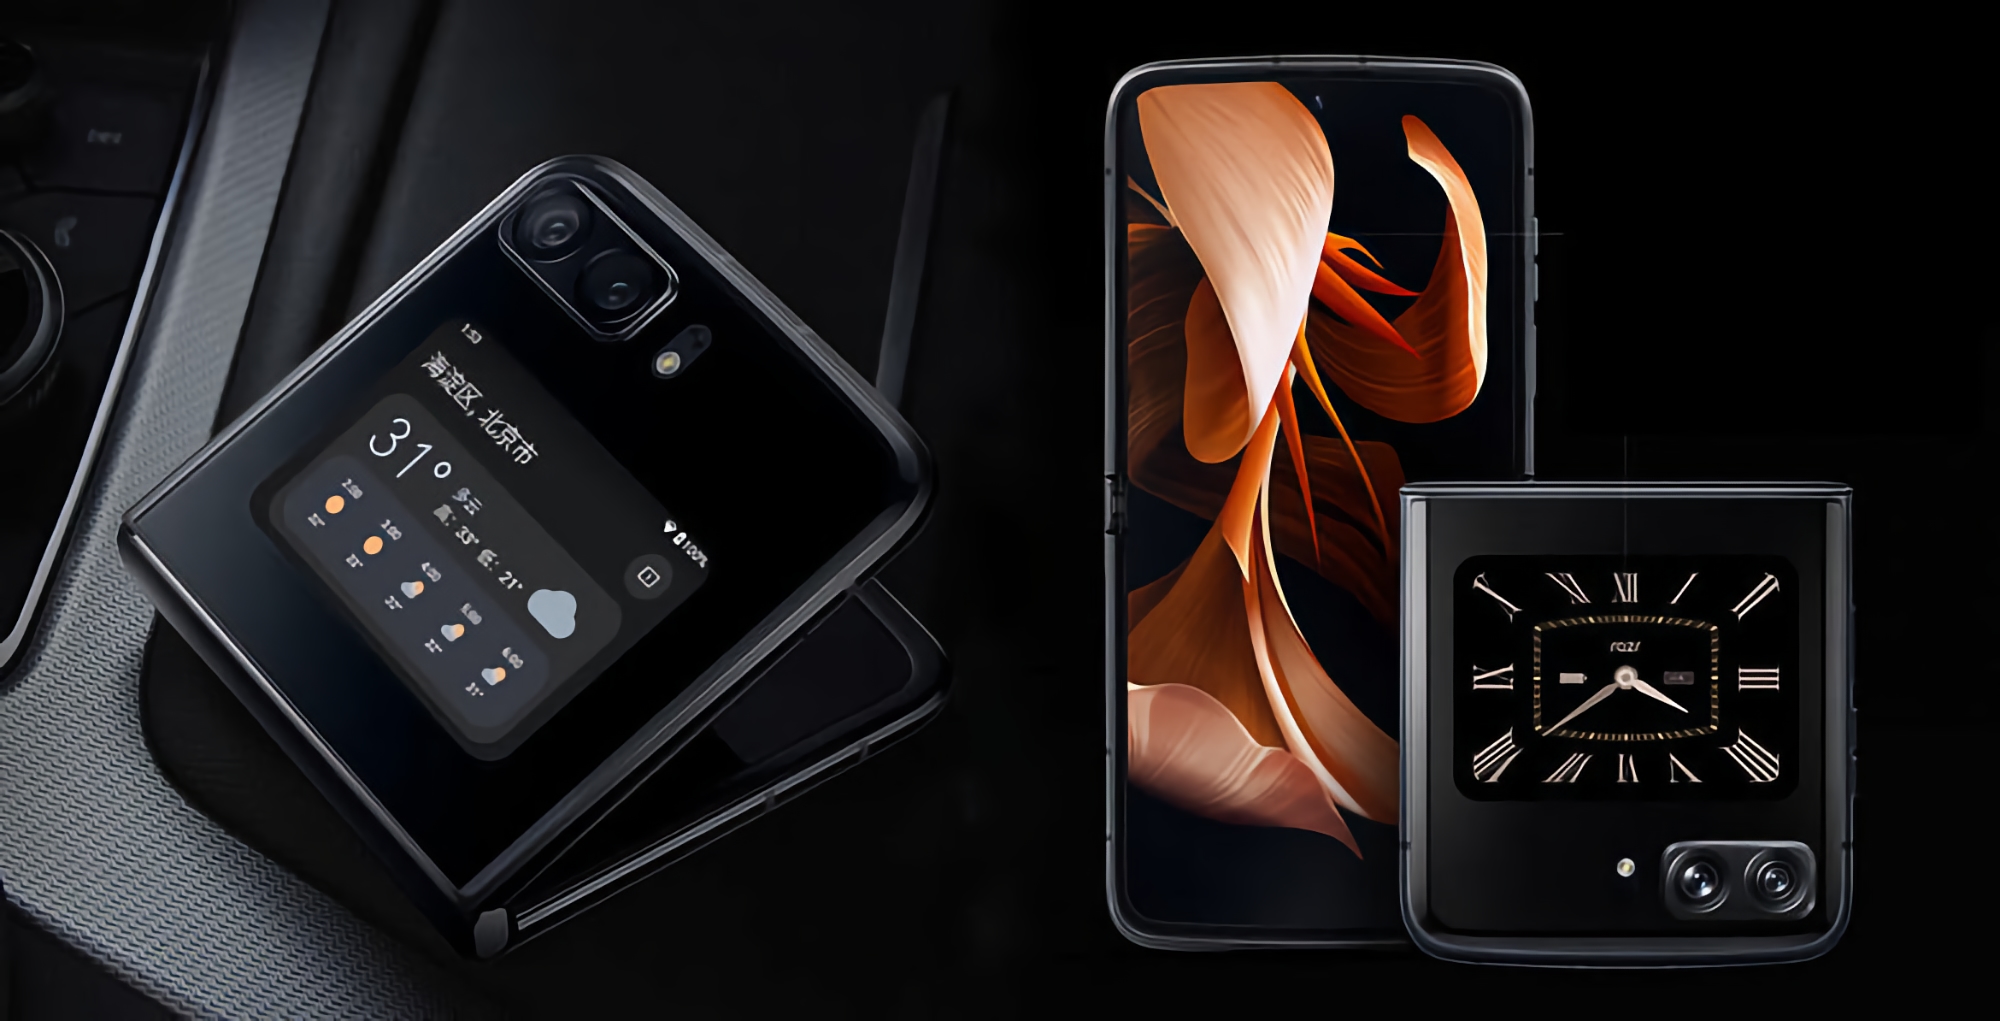 "Le Motorola Razr 2022 sera le premier smartphone pliable du marché avec un écran à 144 Hz